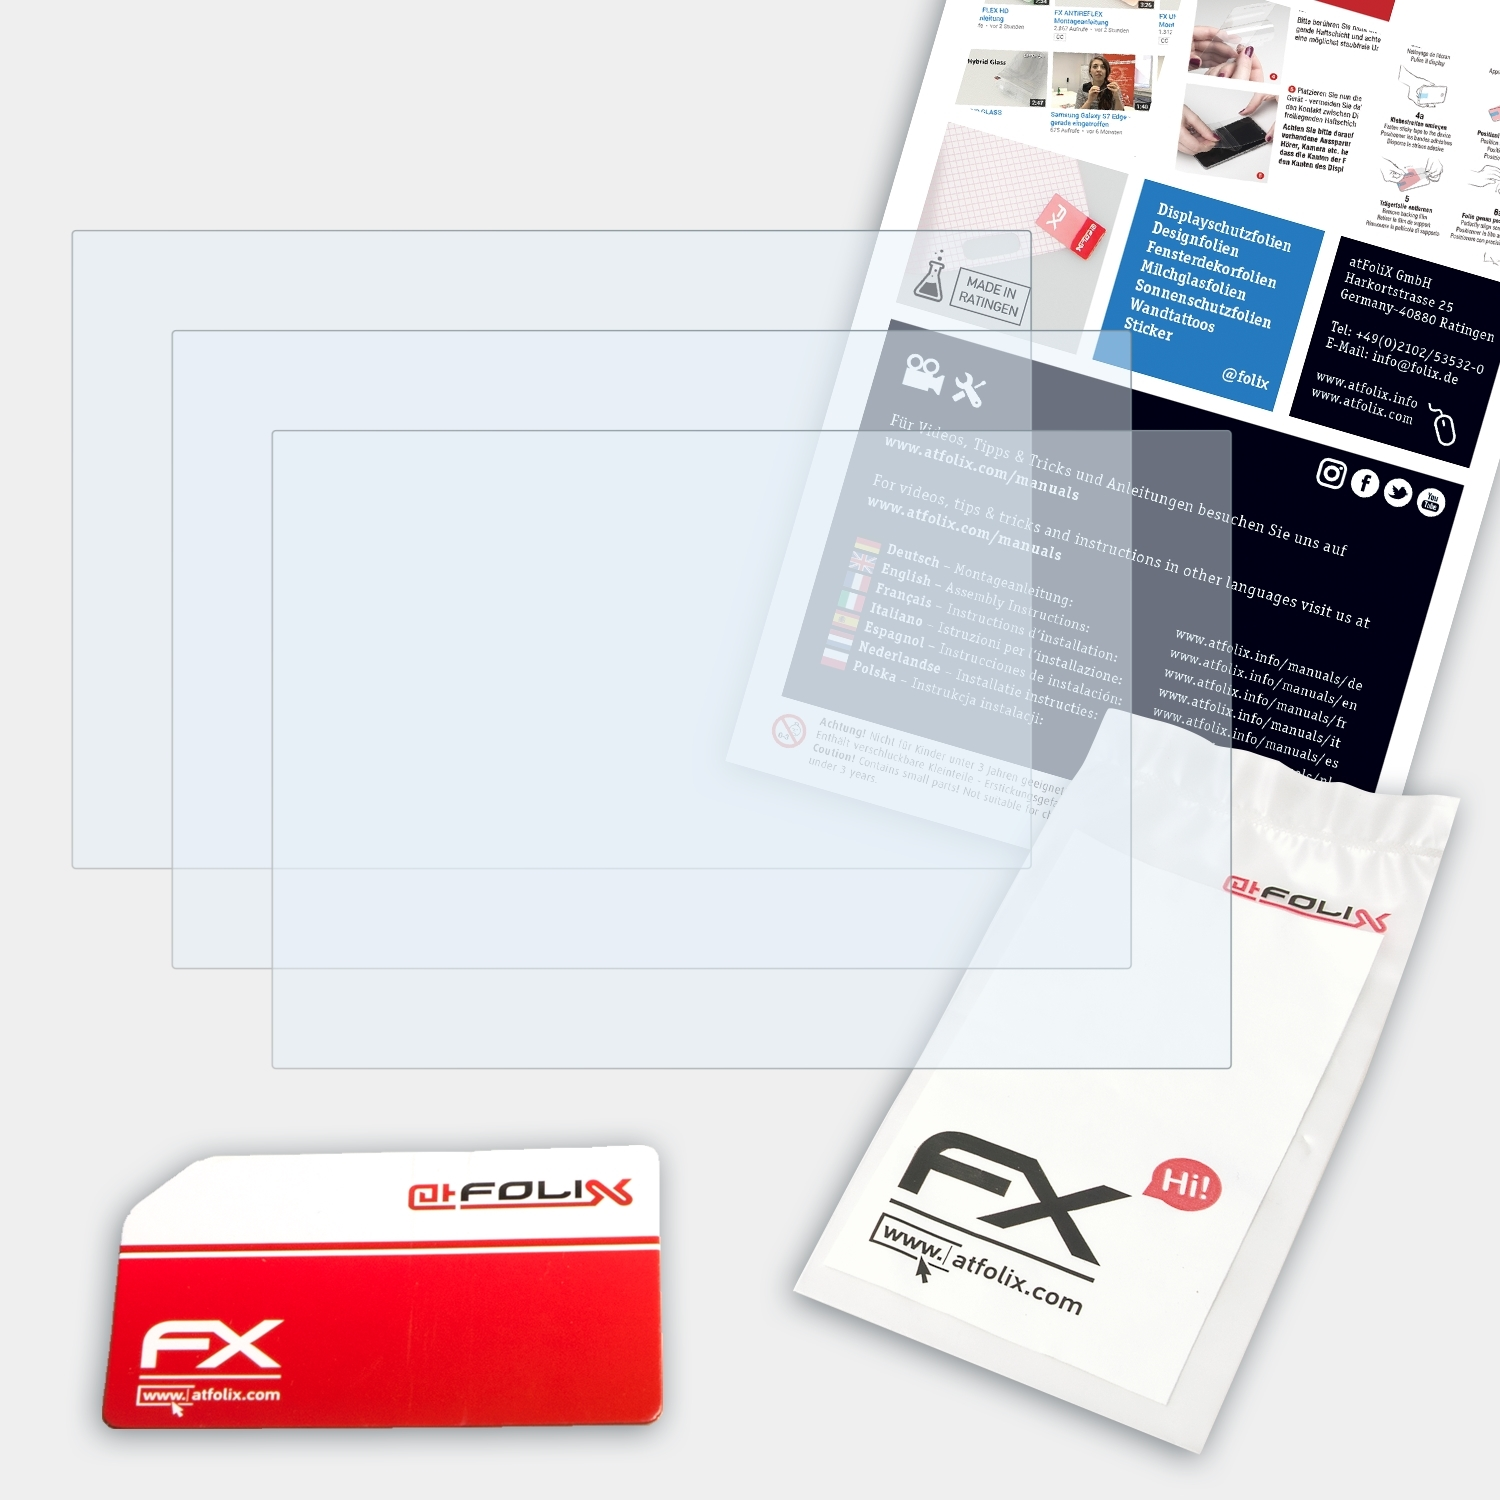 FX-Clear ATFOLIX DMC-FZ1000) Panasonic Displayschutz(für Lumix 3x